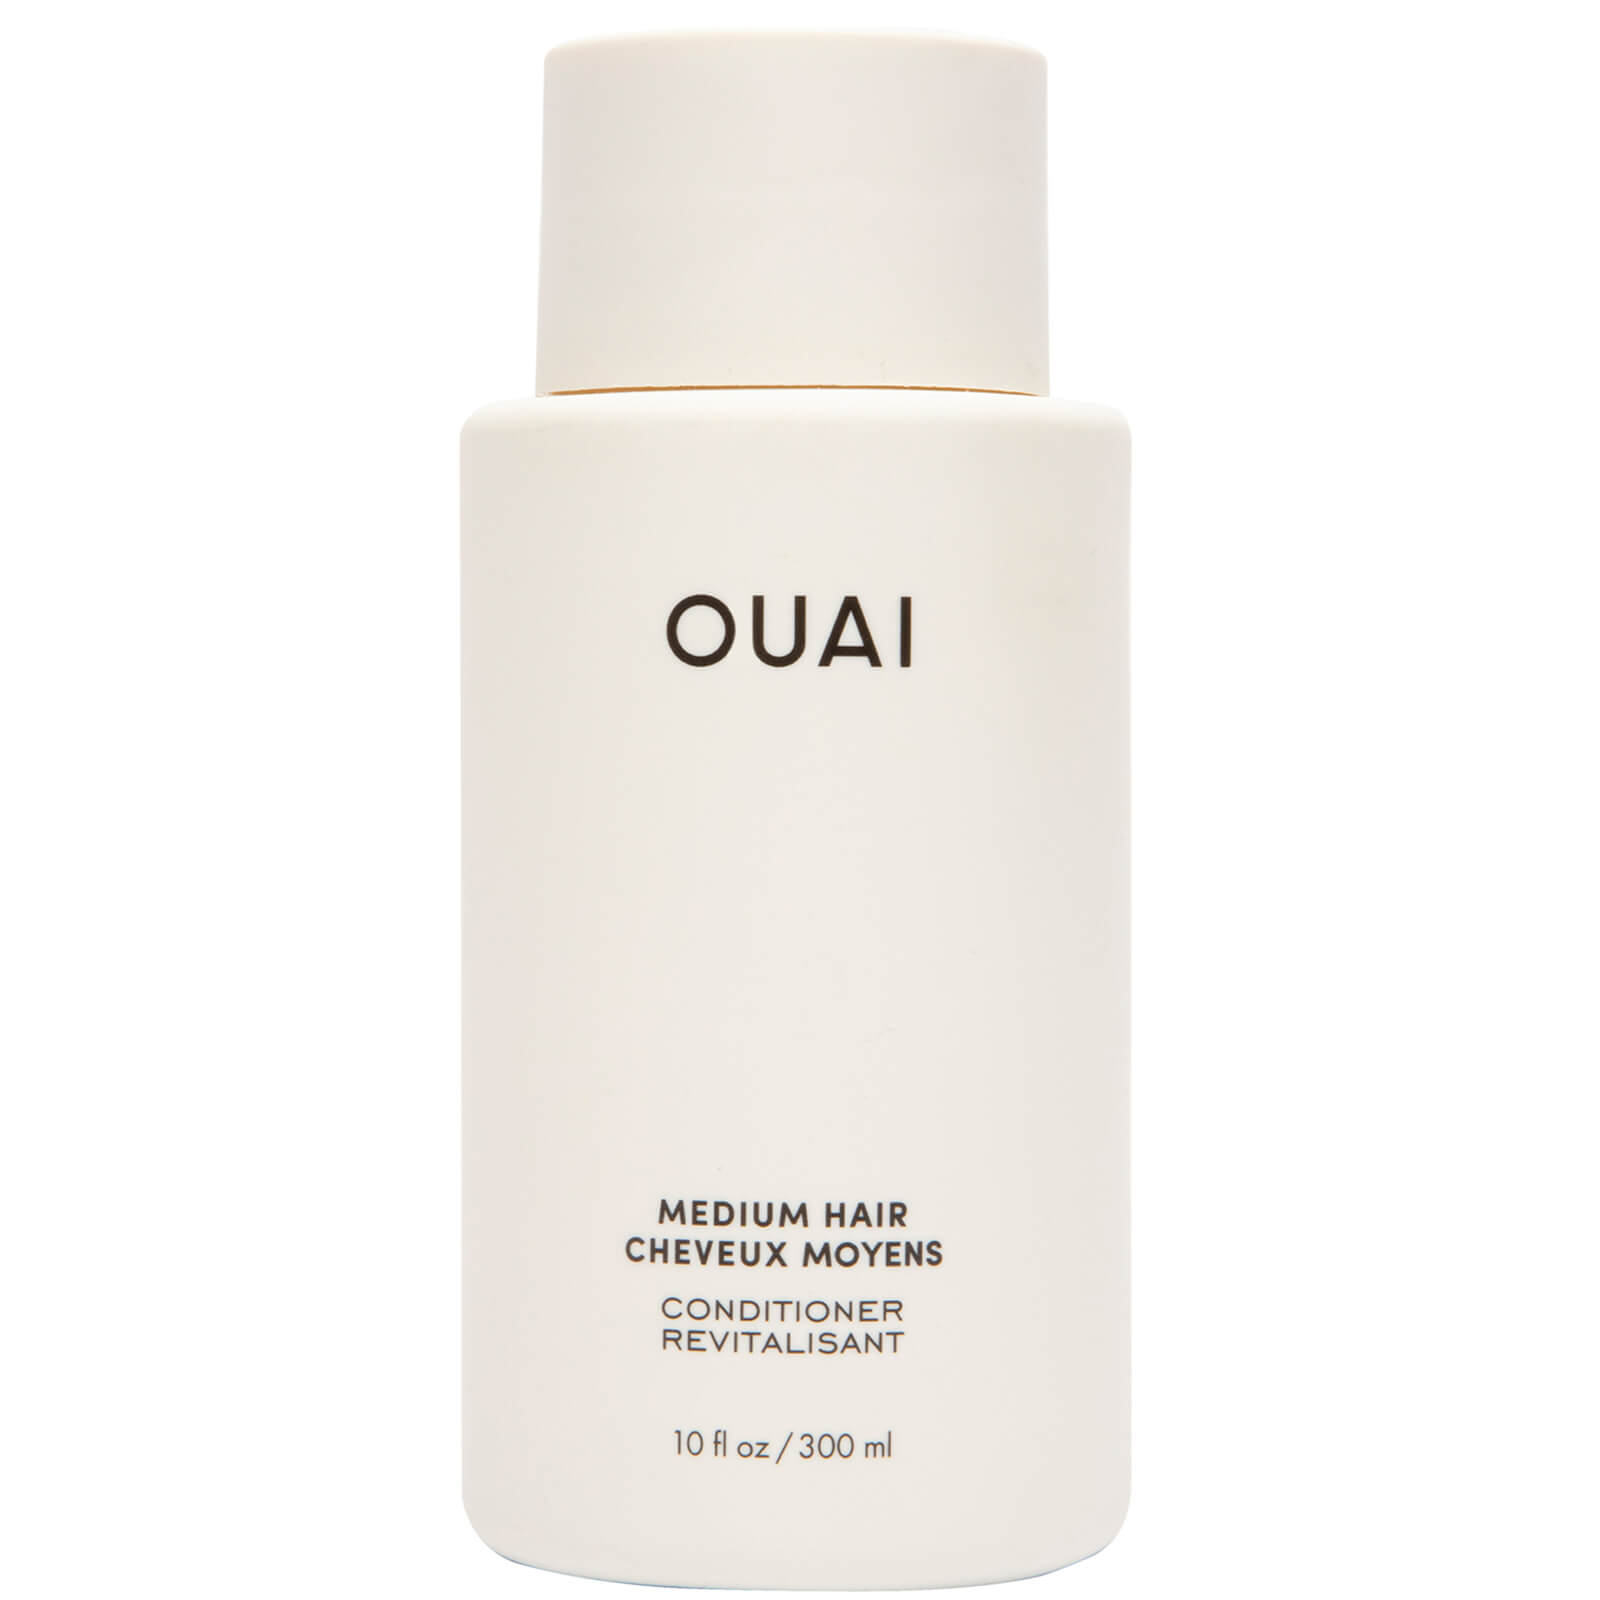 OUAI Medium Hair Conditioner 300ml product